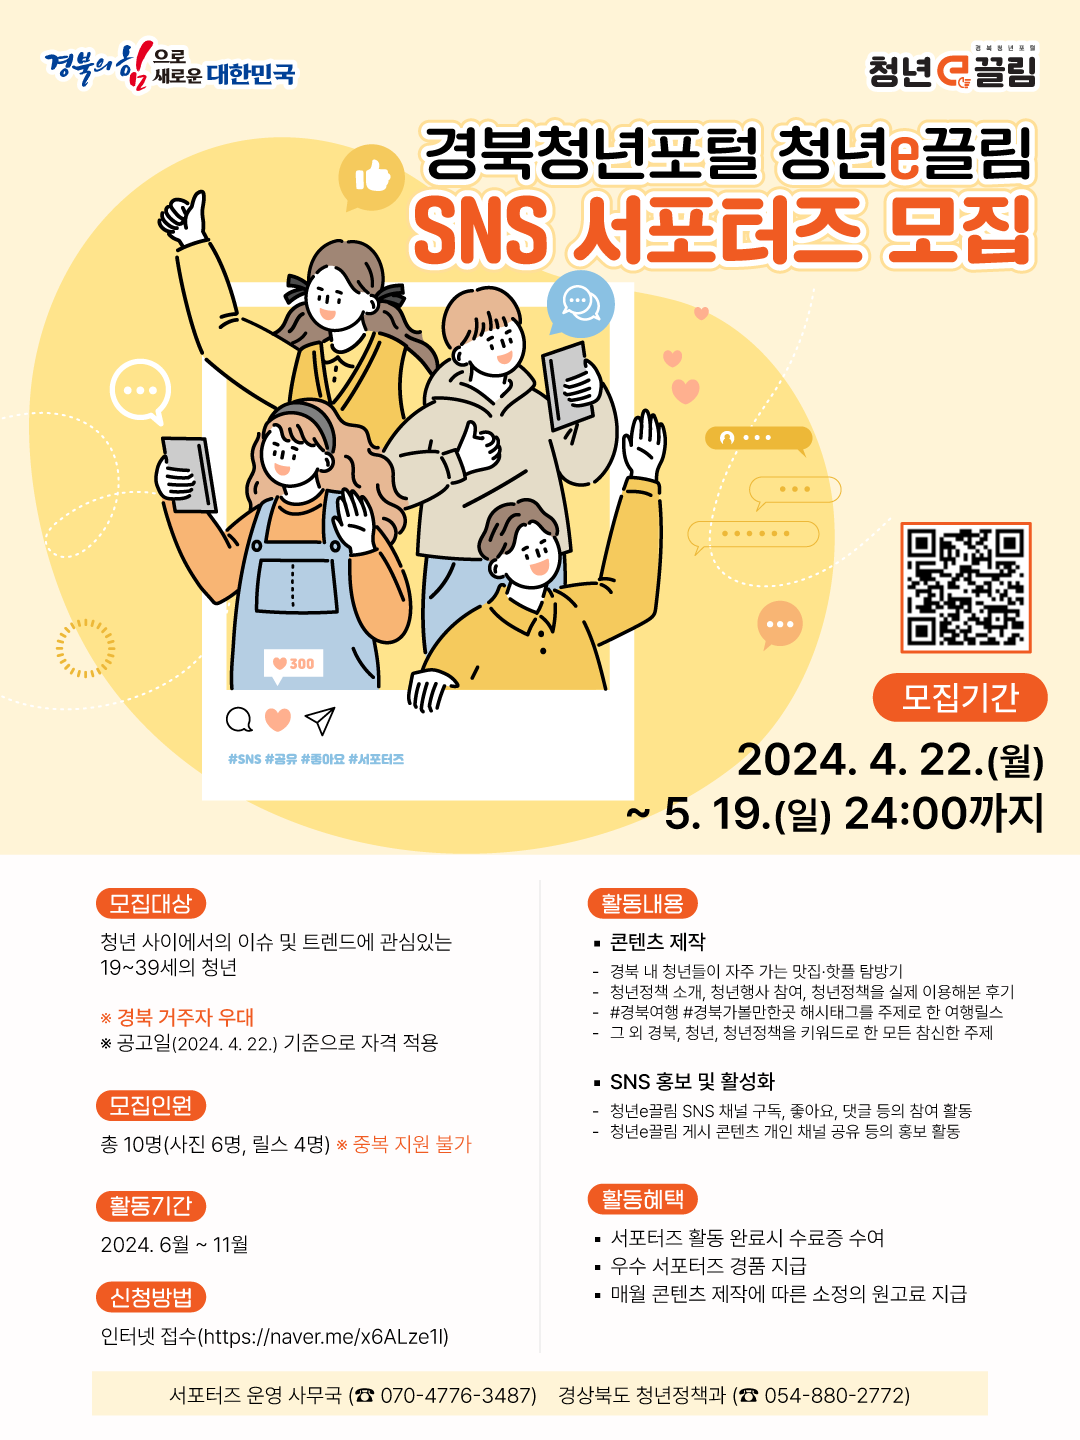 경상북도 청년포털 「청년e끌림」 SNS 홍보 서포터즈 모집 안내 2